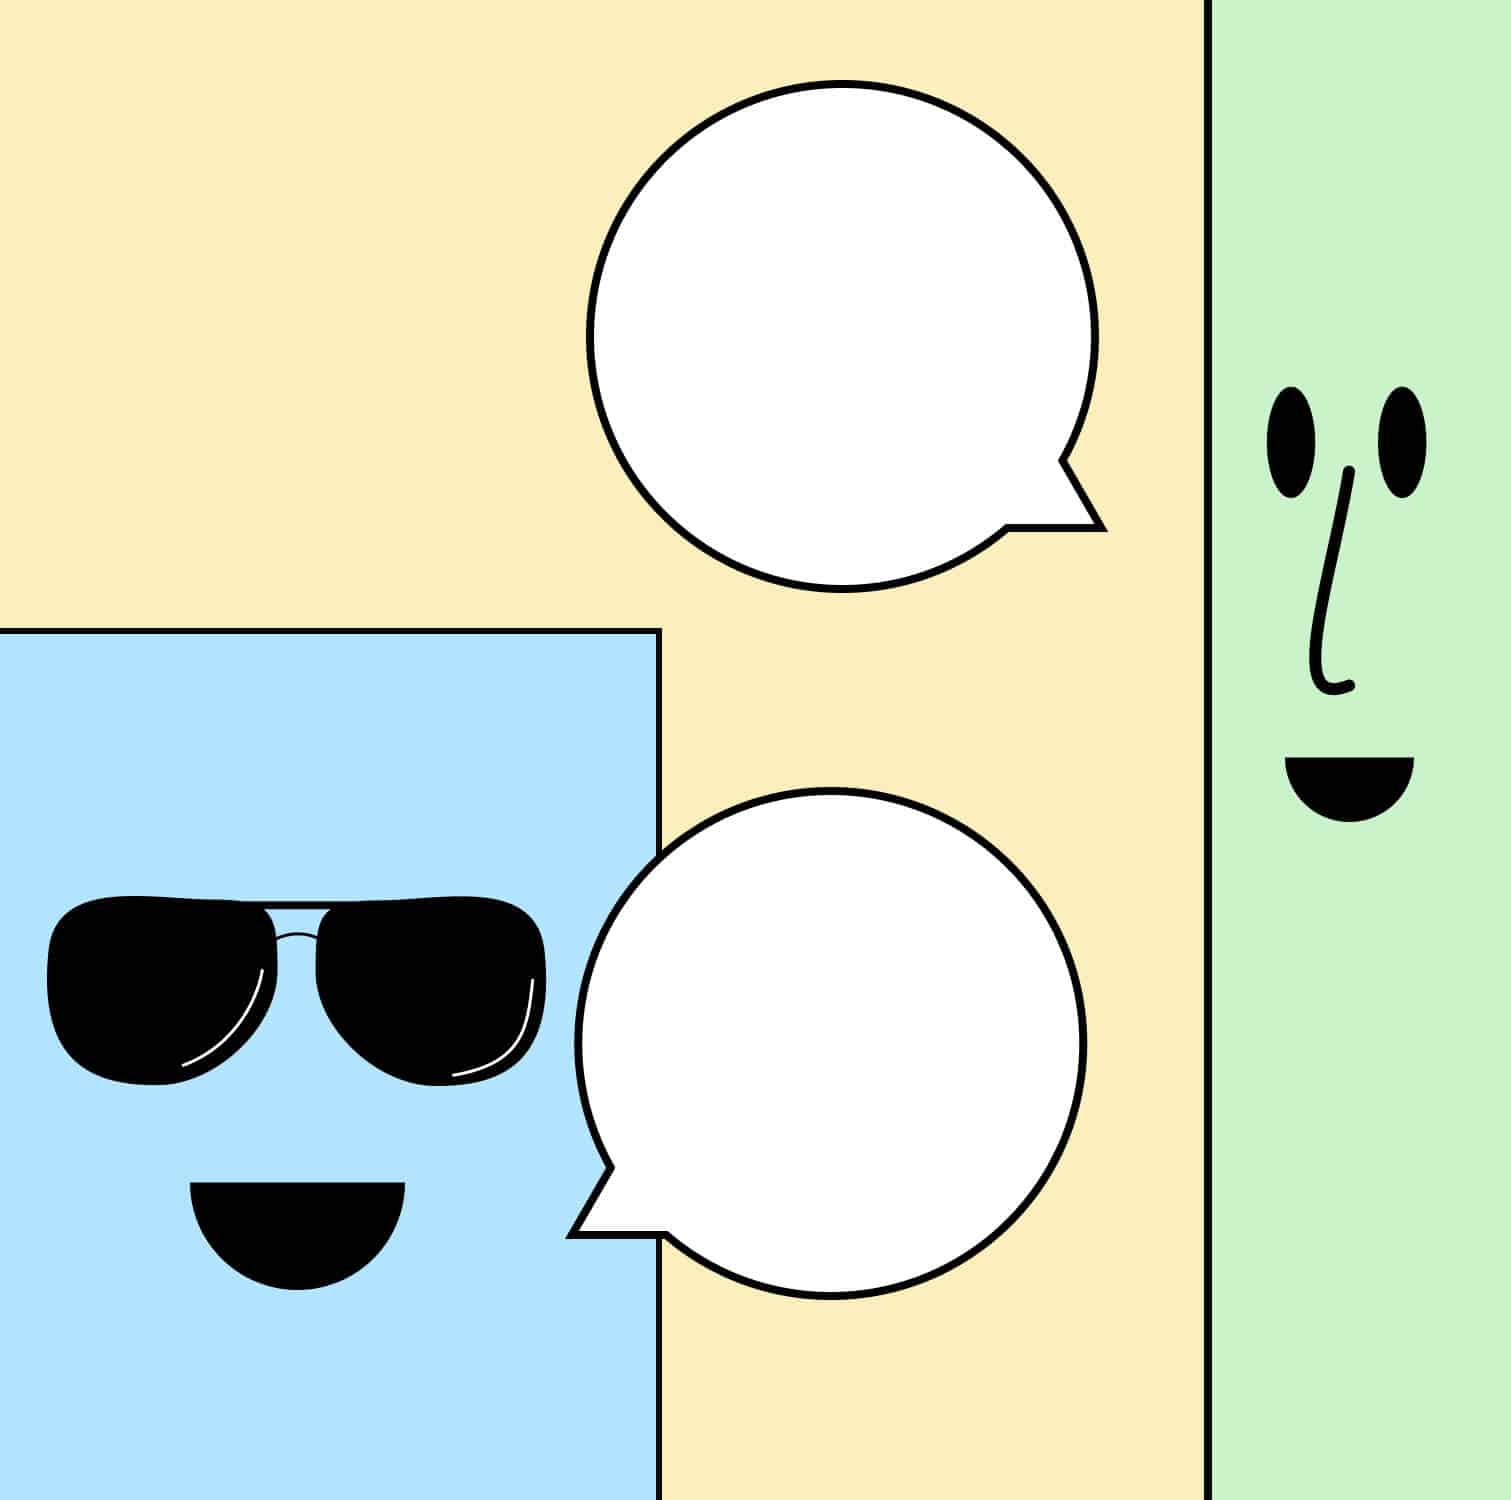 Zwei illustrierte Figuren haben einen Dialog miteinander